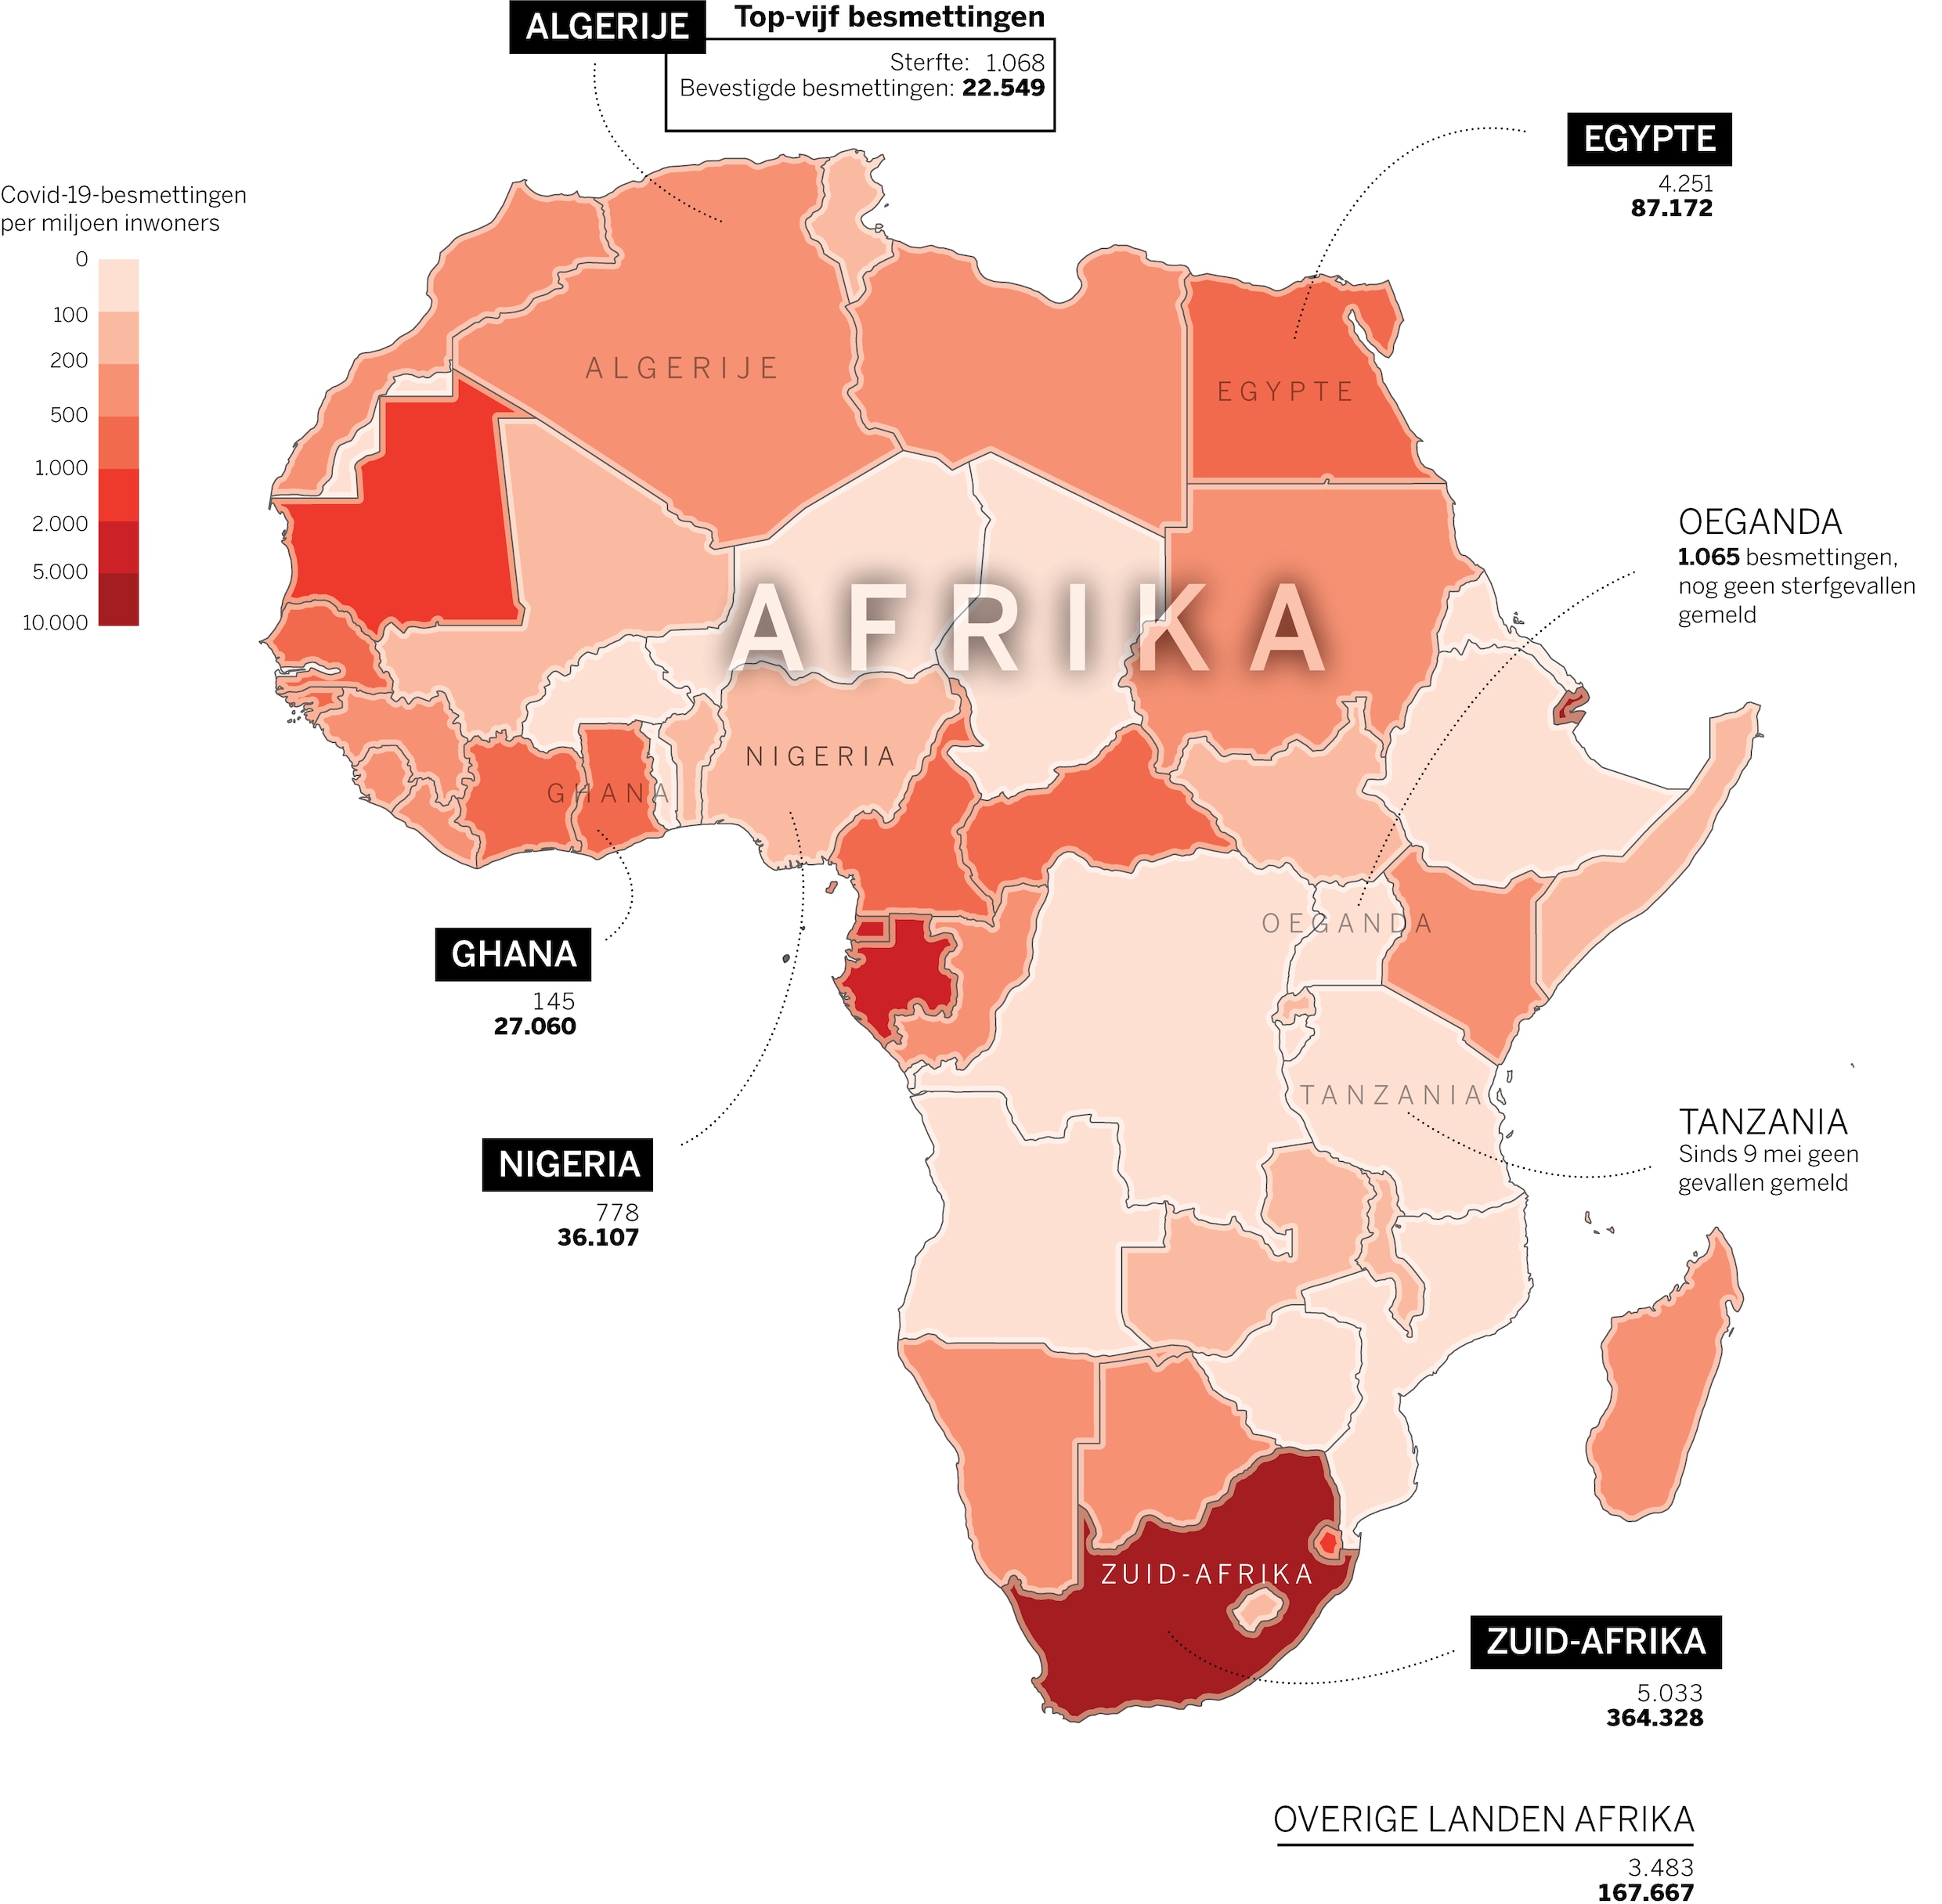 Corona laait op in Afrika na versoepeling van lockdowns: wordt dit de volgende hotspot?